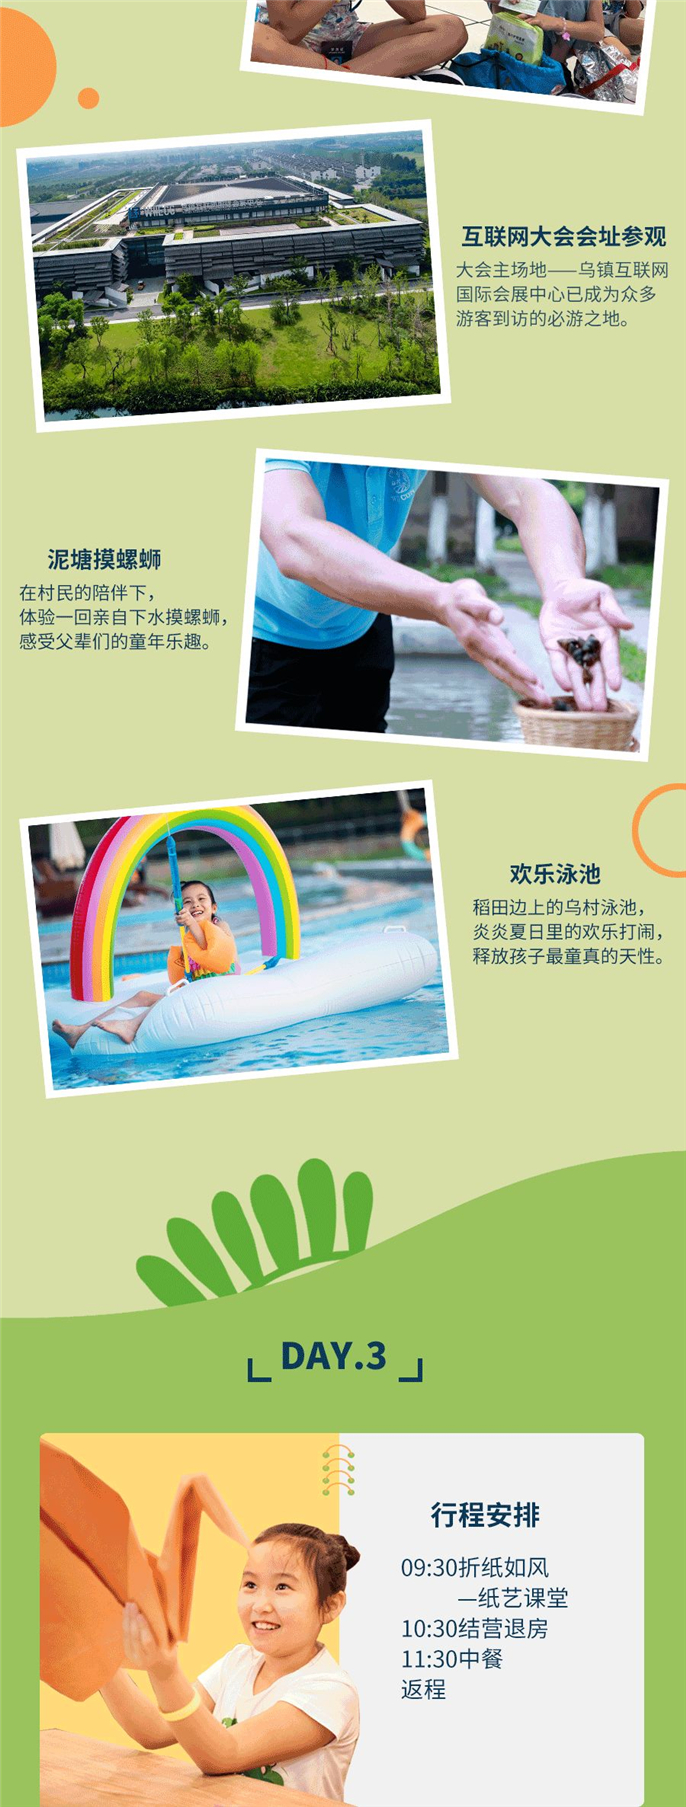 WeChat Image_20200713104914.jpg